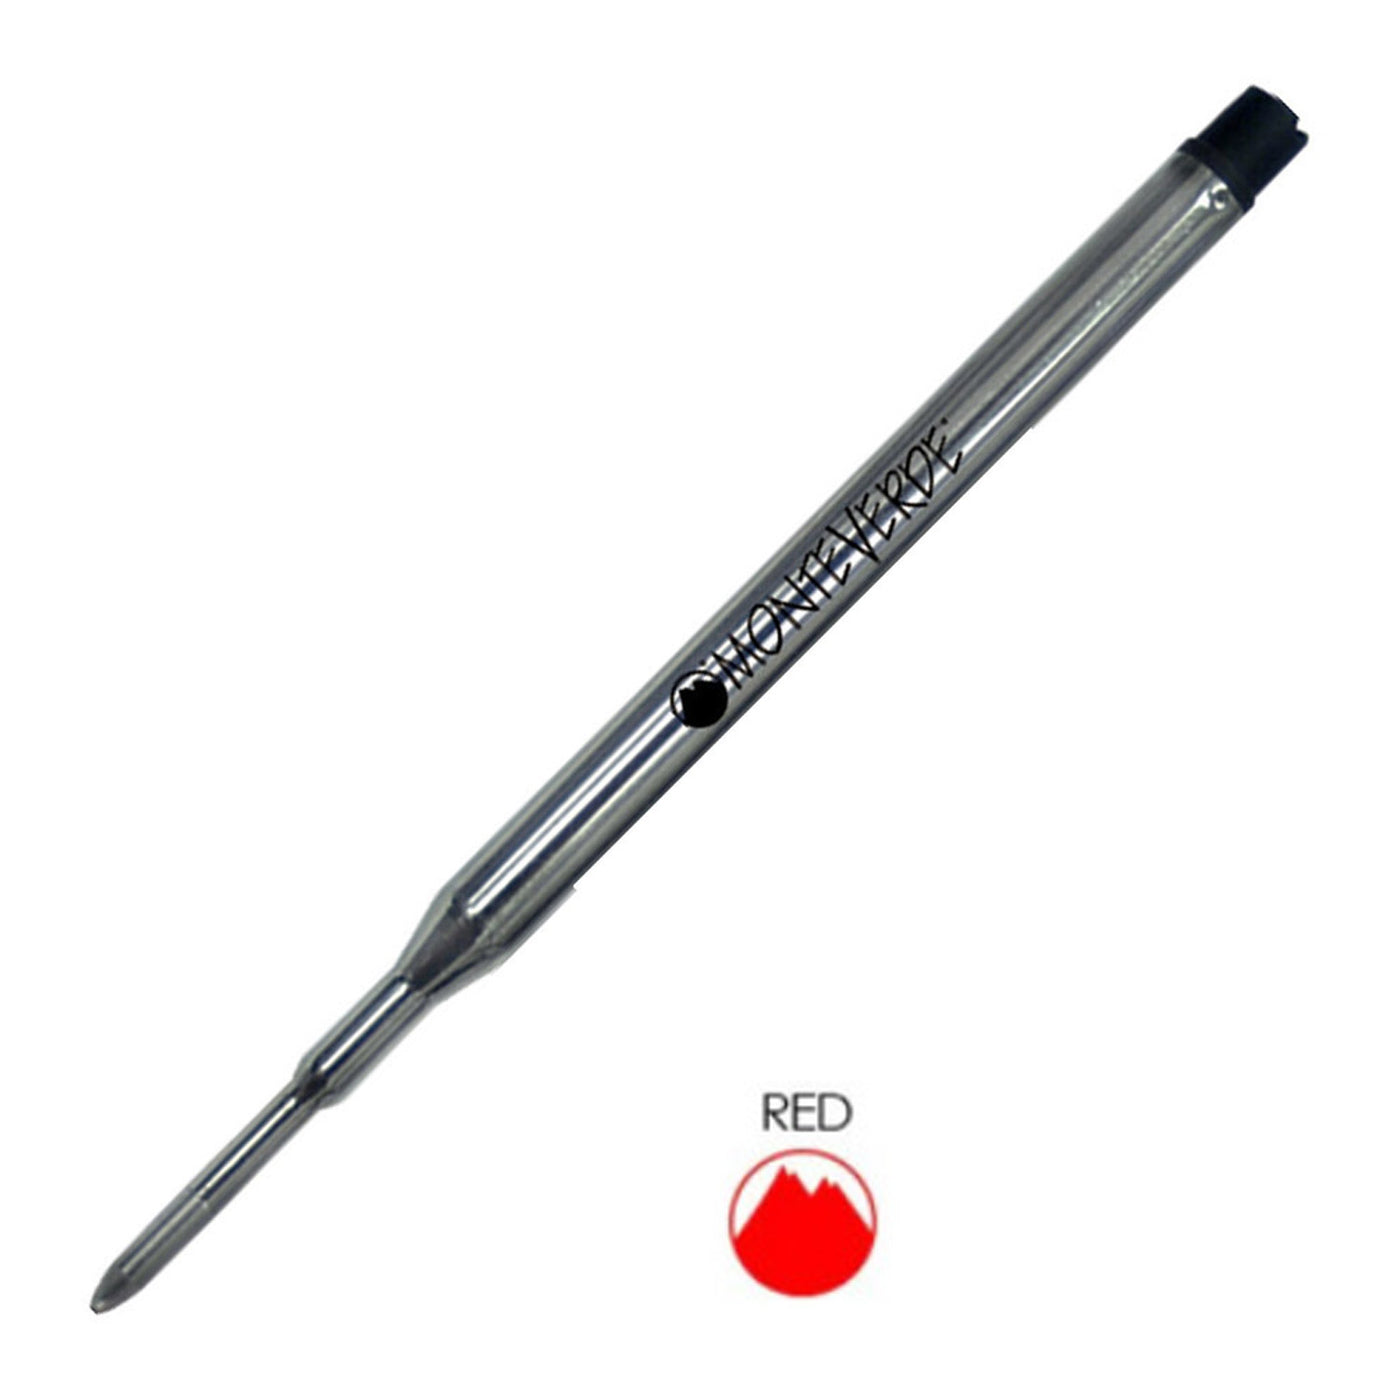  Monteverde Ball Pen Refill for Sheaffer - Medium - Red - Pack of 2 1